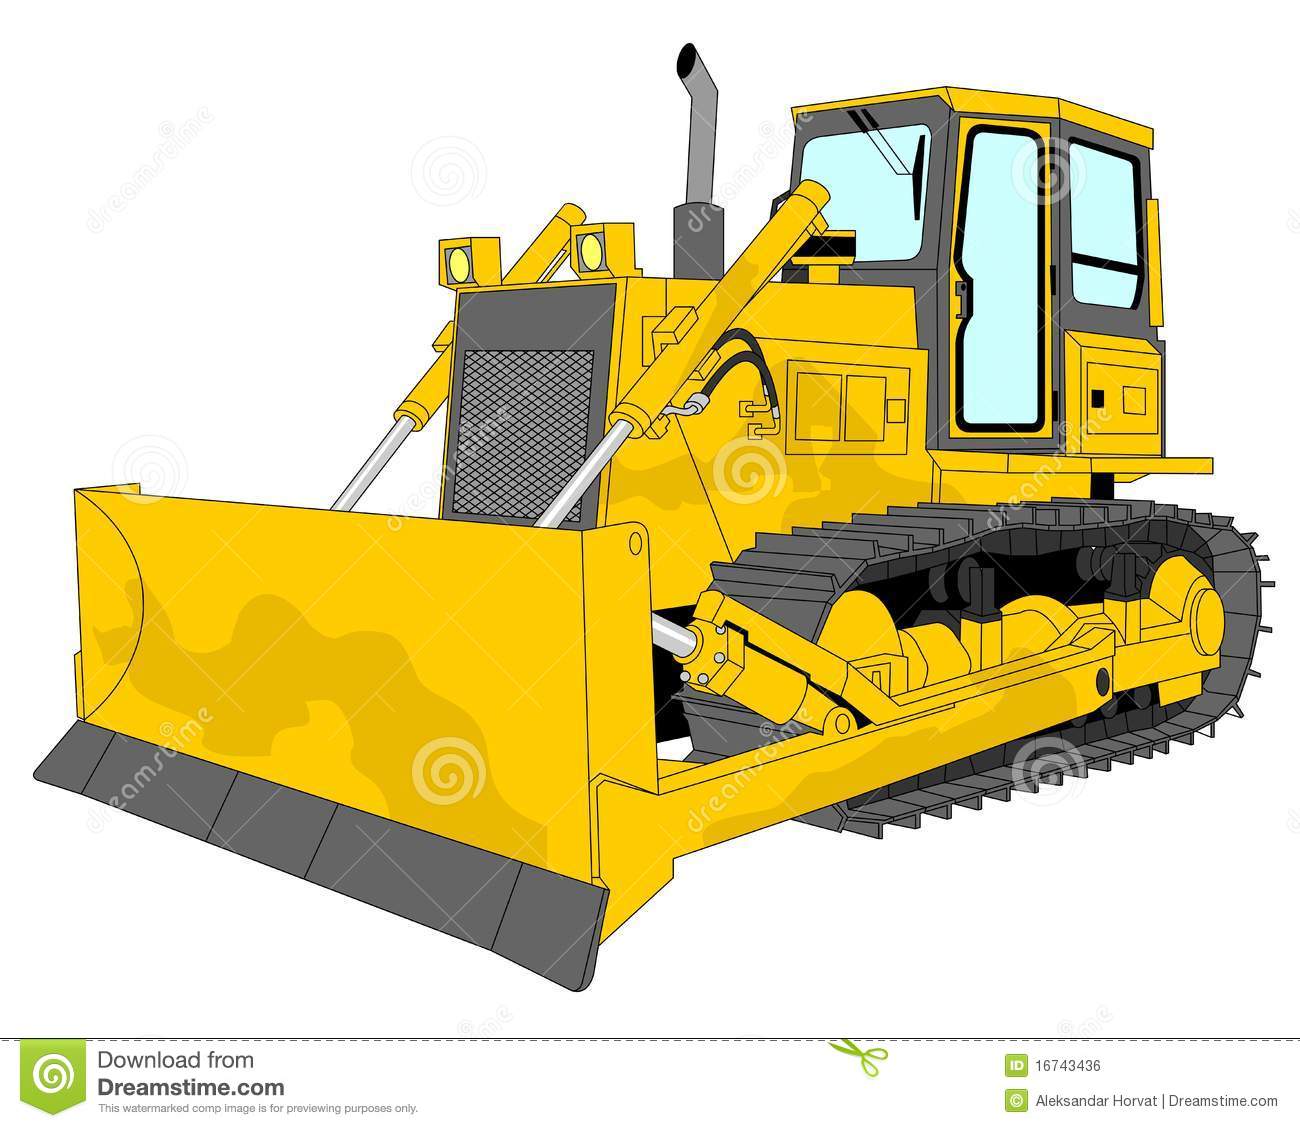 Bulldozer Illustration Royalty Free Stock Image   Image  16743436